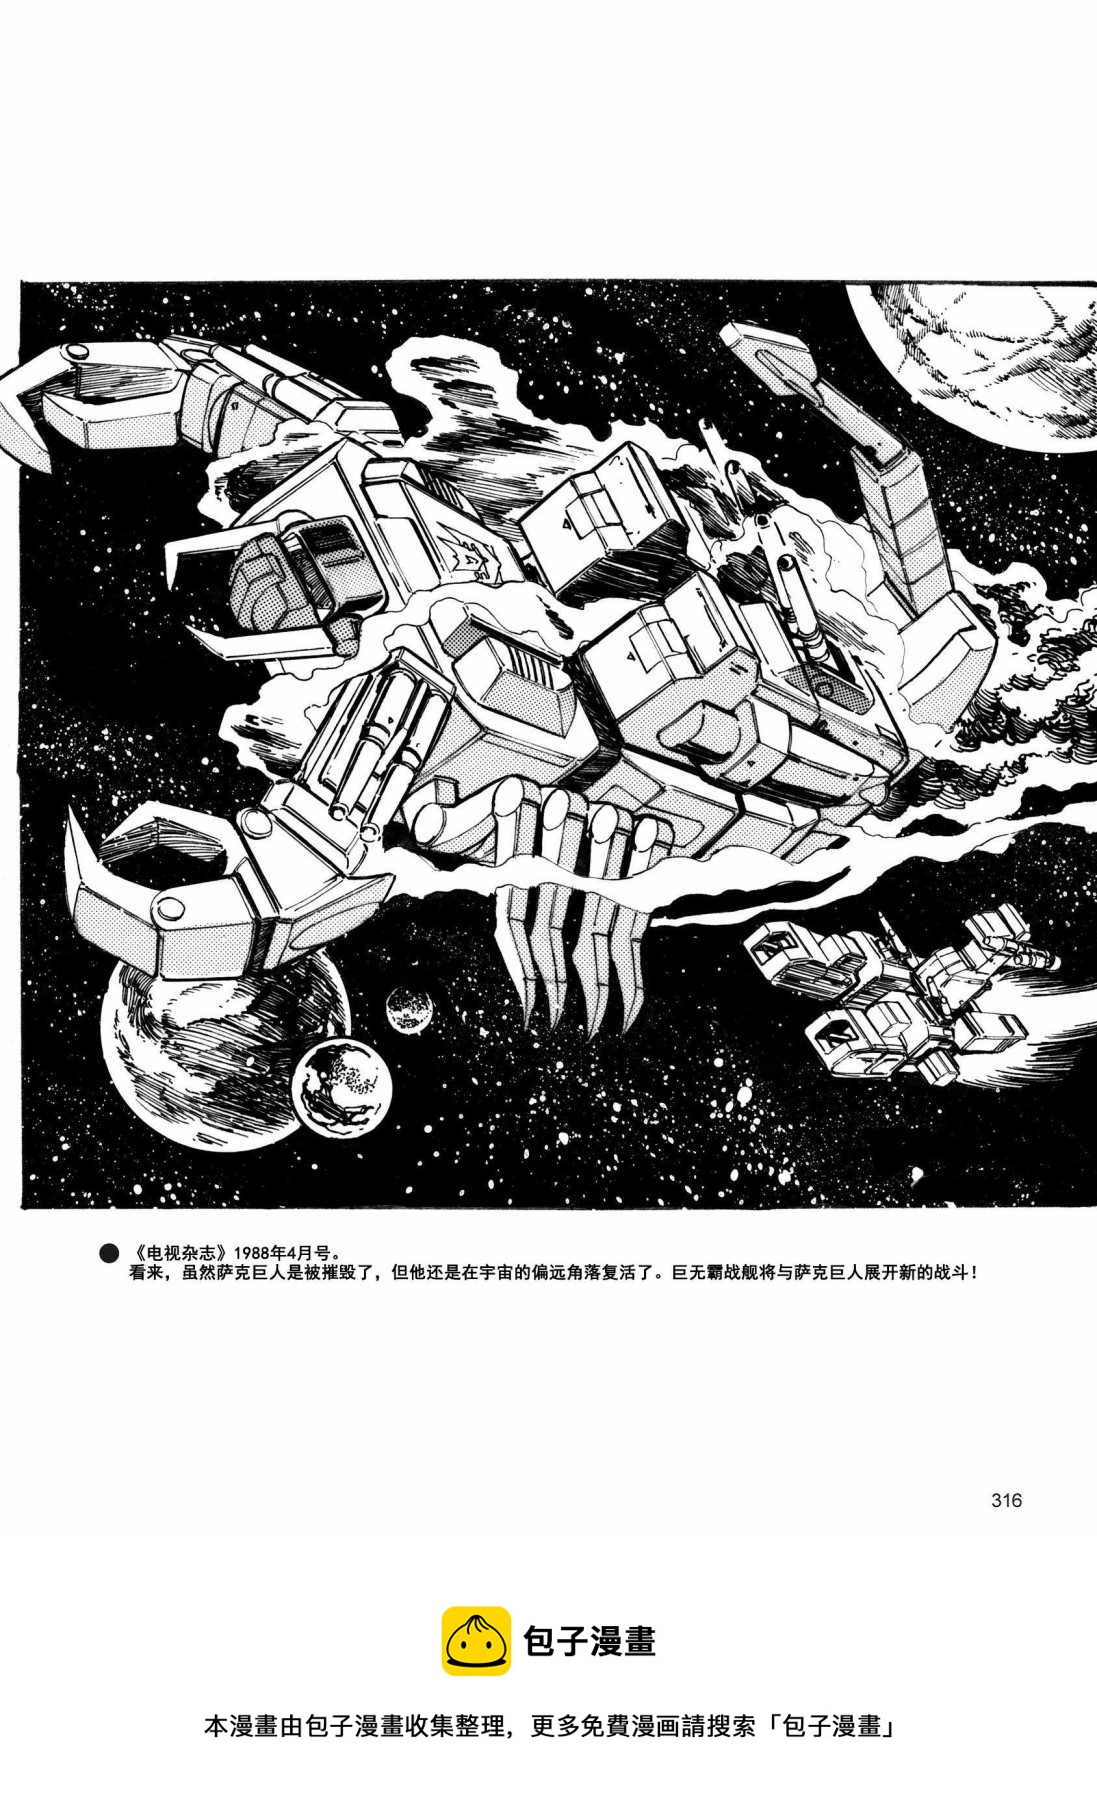 變形金剛日版G1雜誌插畫 - 變形金剛：頭領戰士 - 8